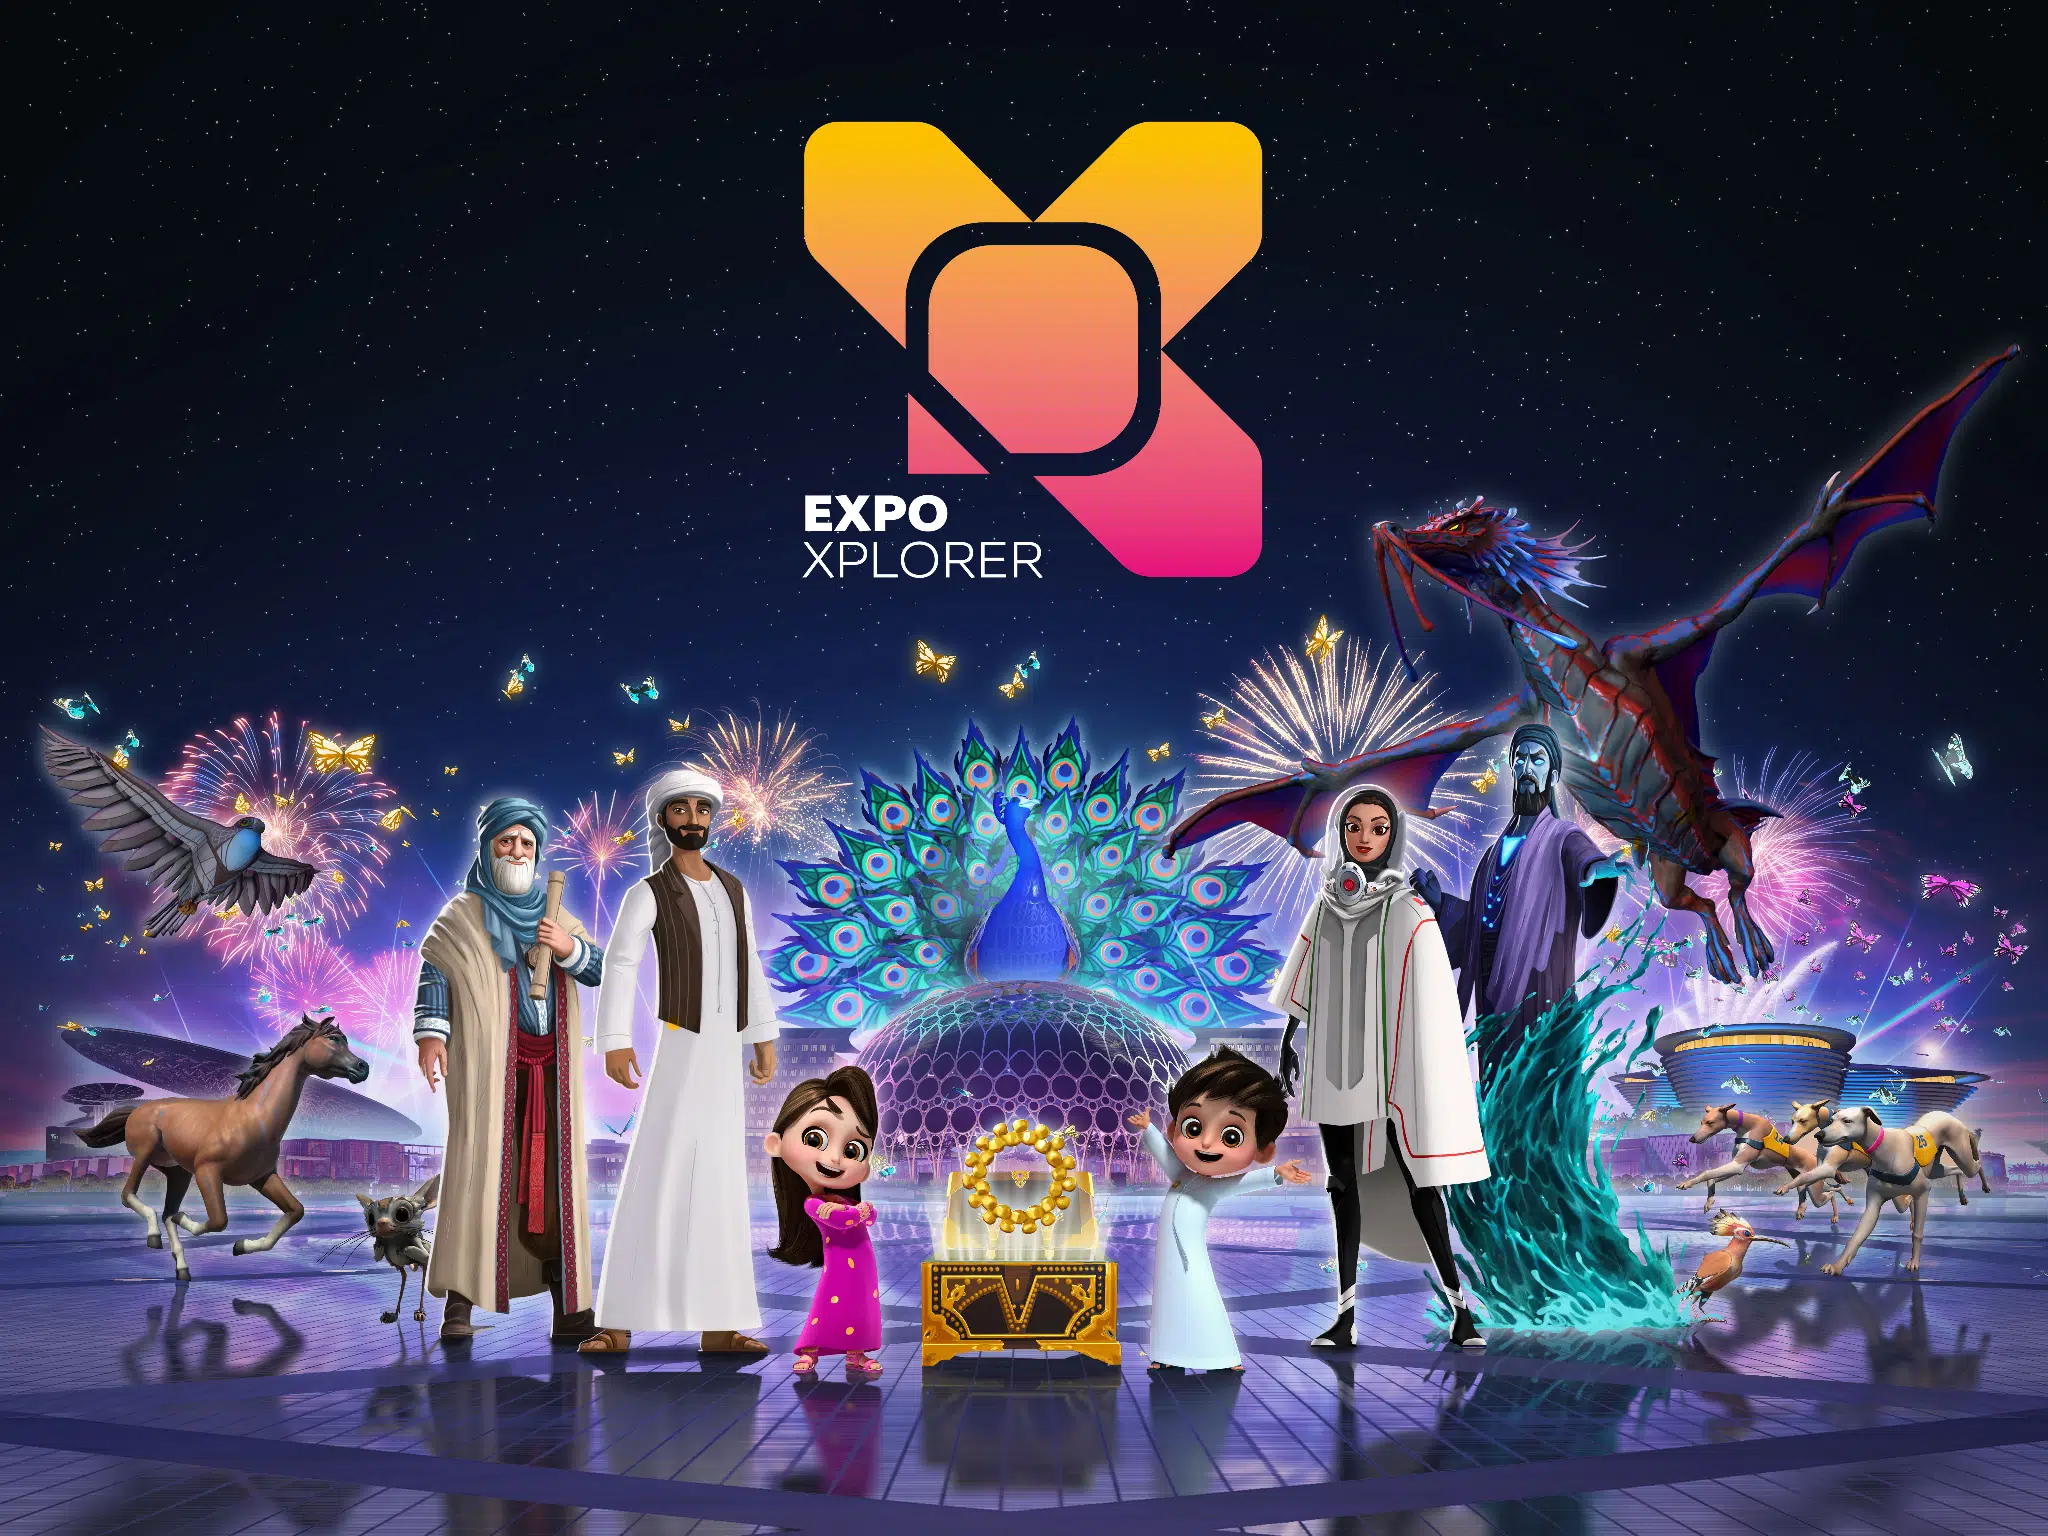 虚拟与现实完美融合——维塔士与Expo Dubai Xplorer为迪拜2020世界博览会呈现精美的美术资产